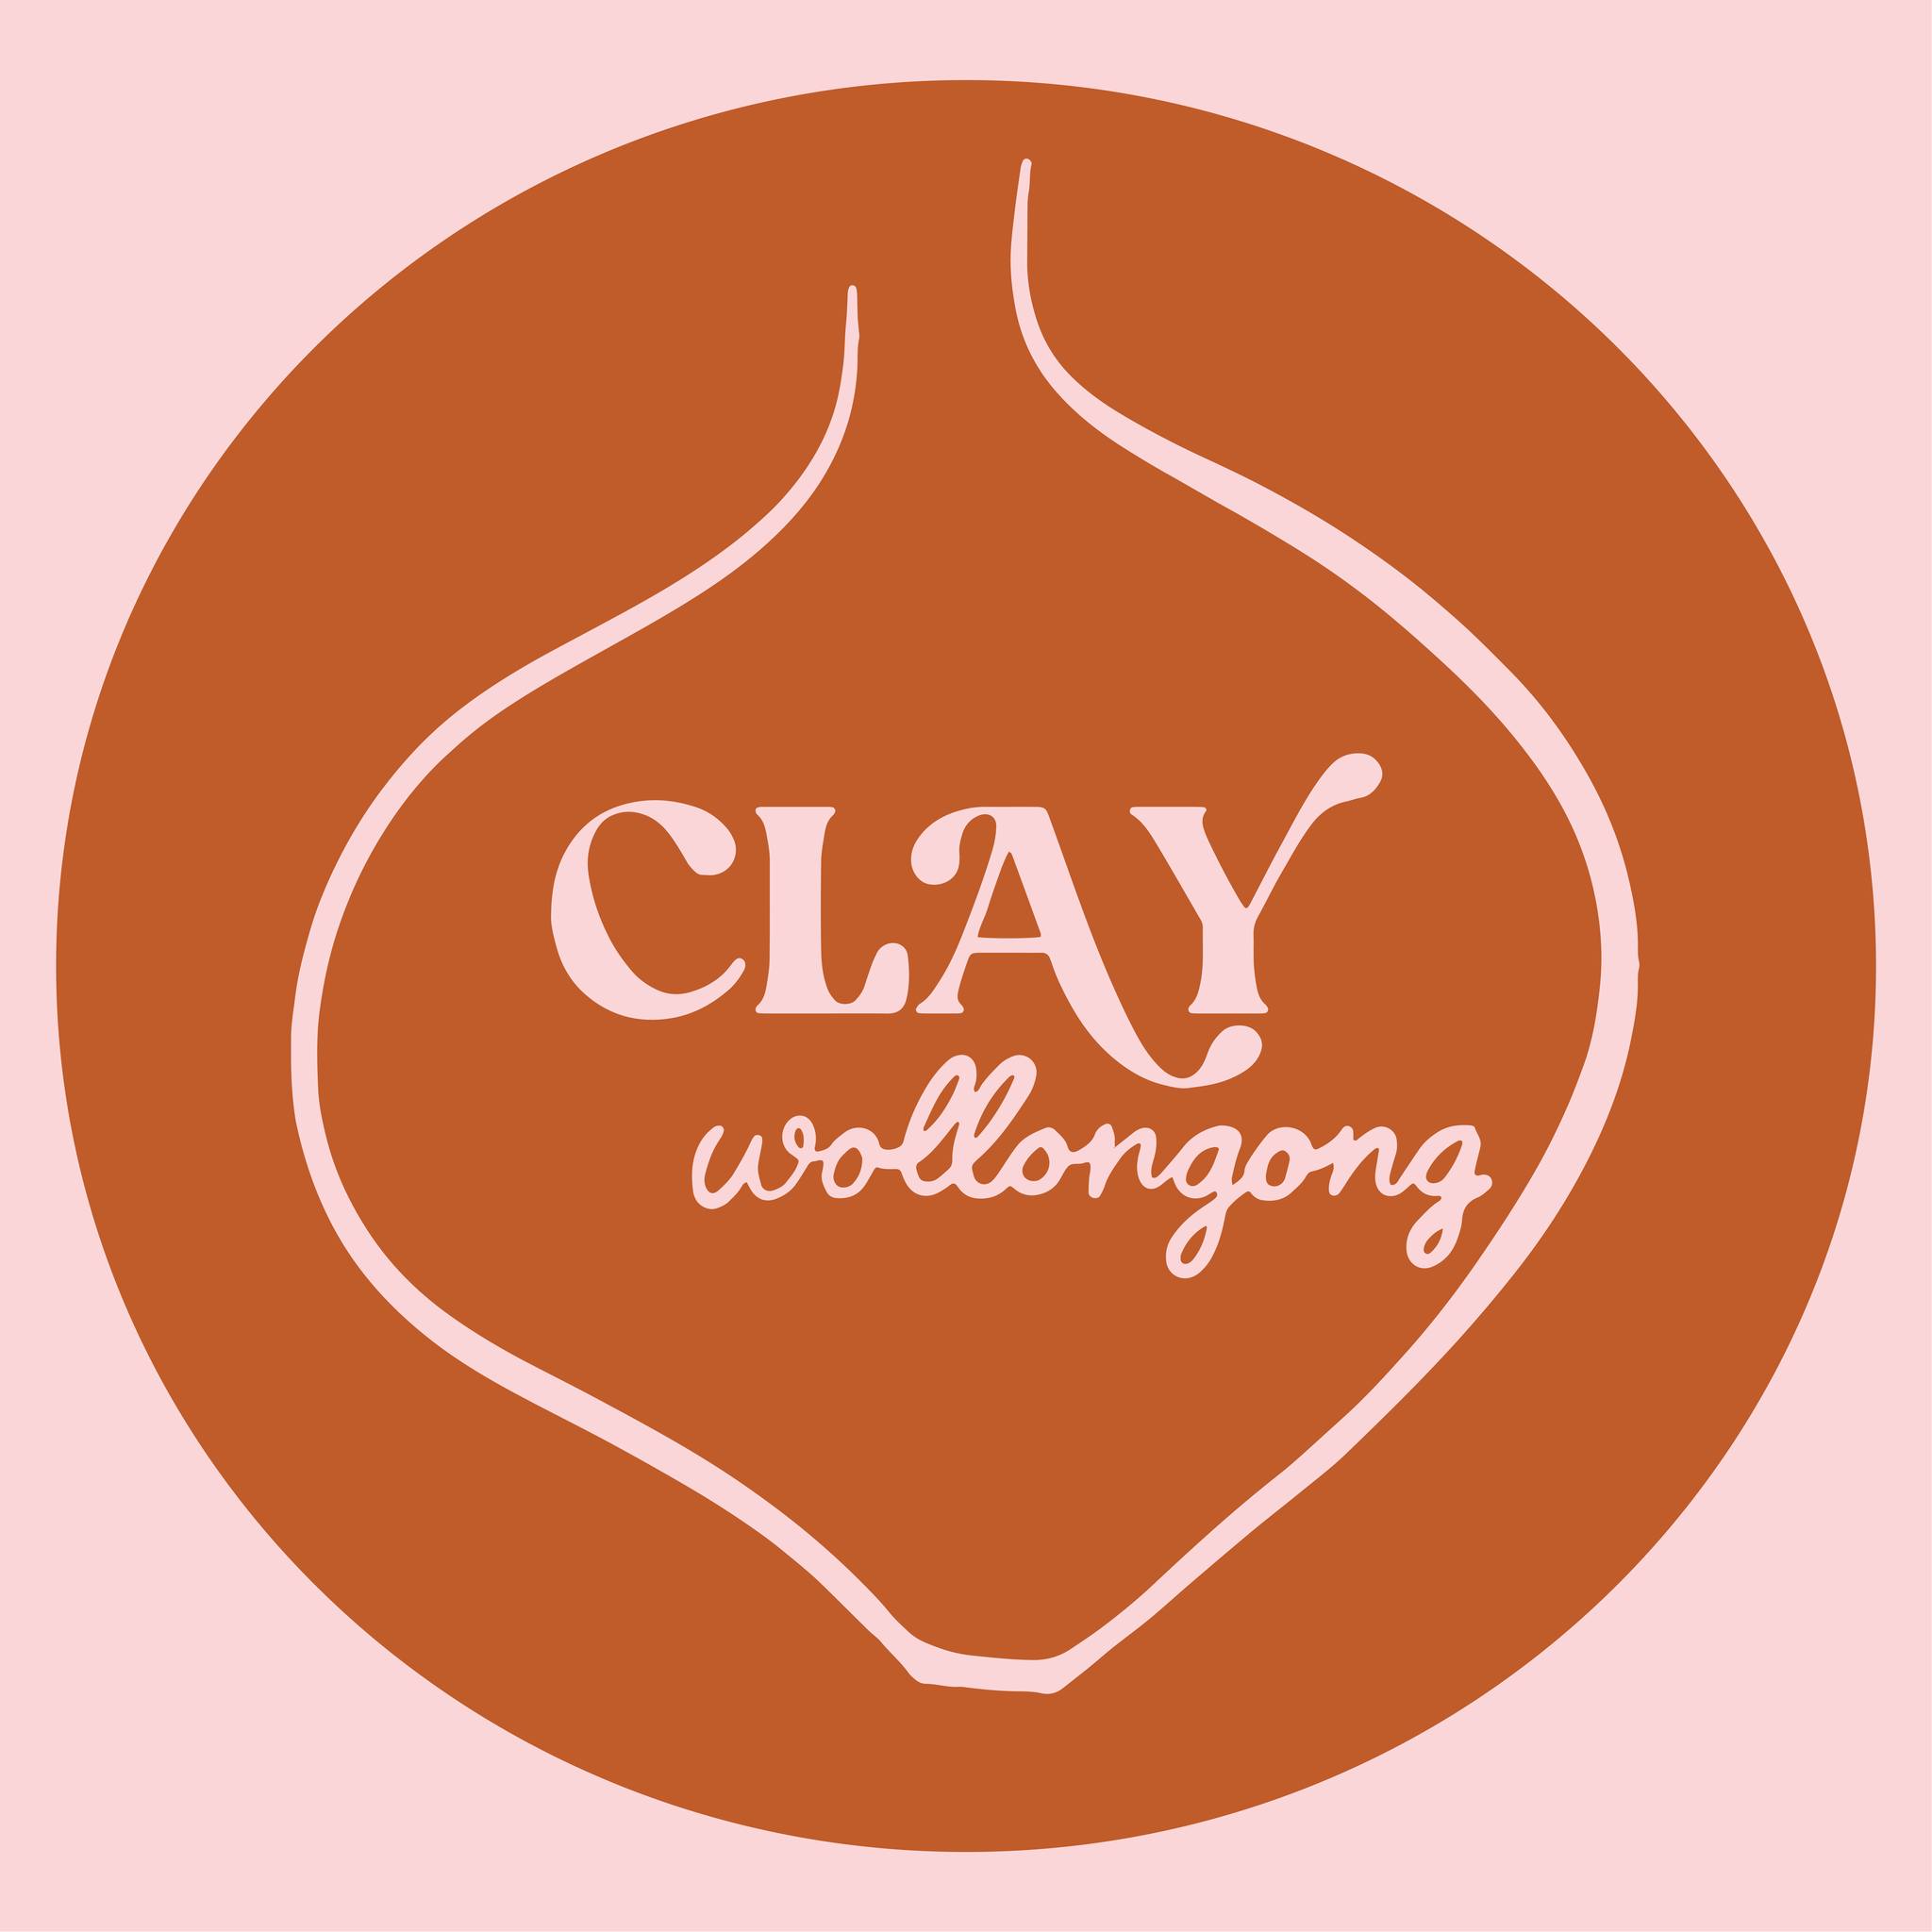 Clay Wollongong